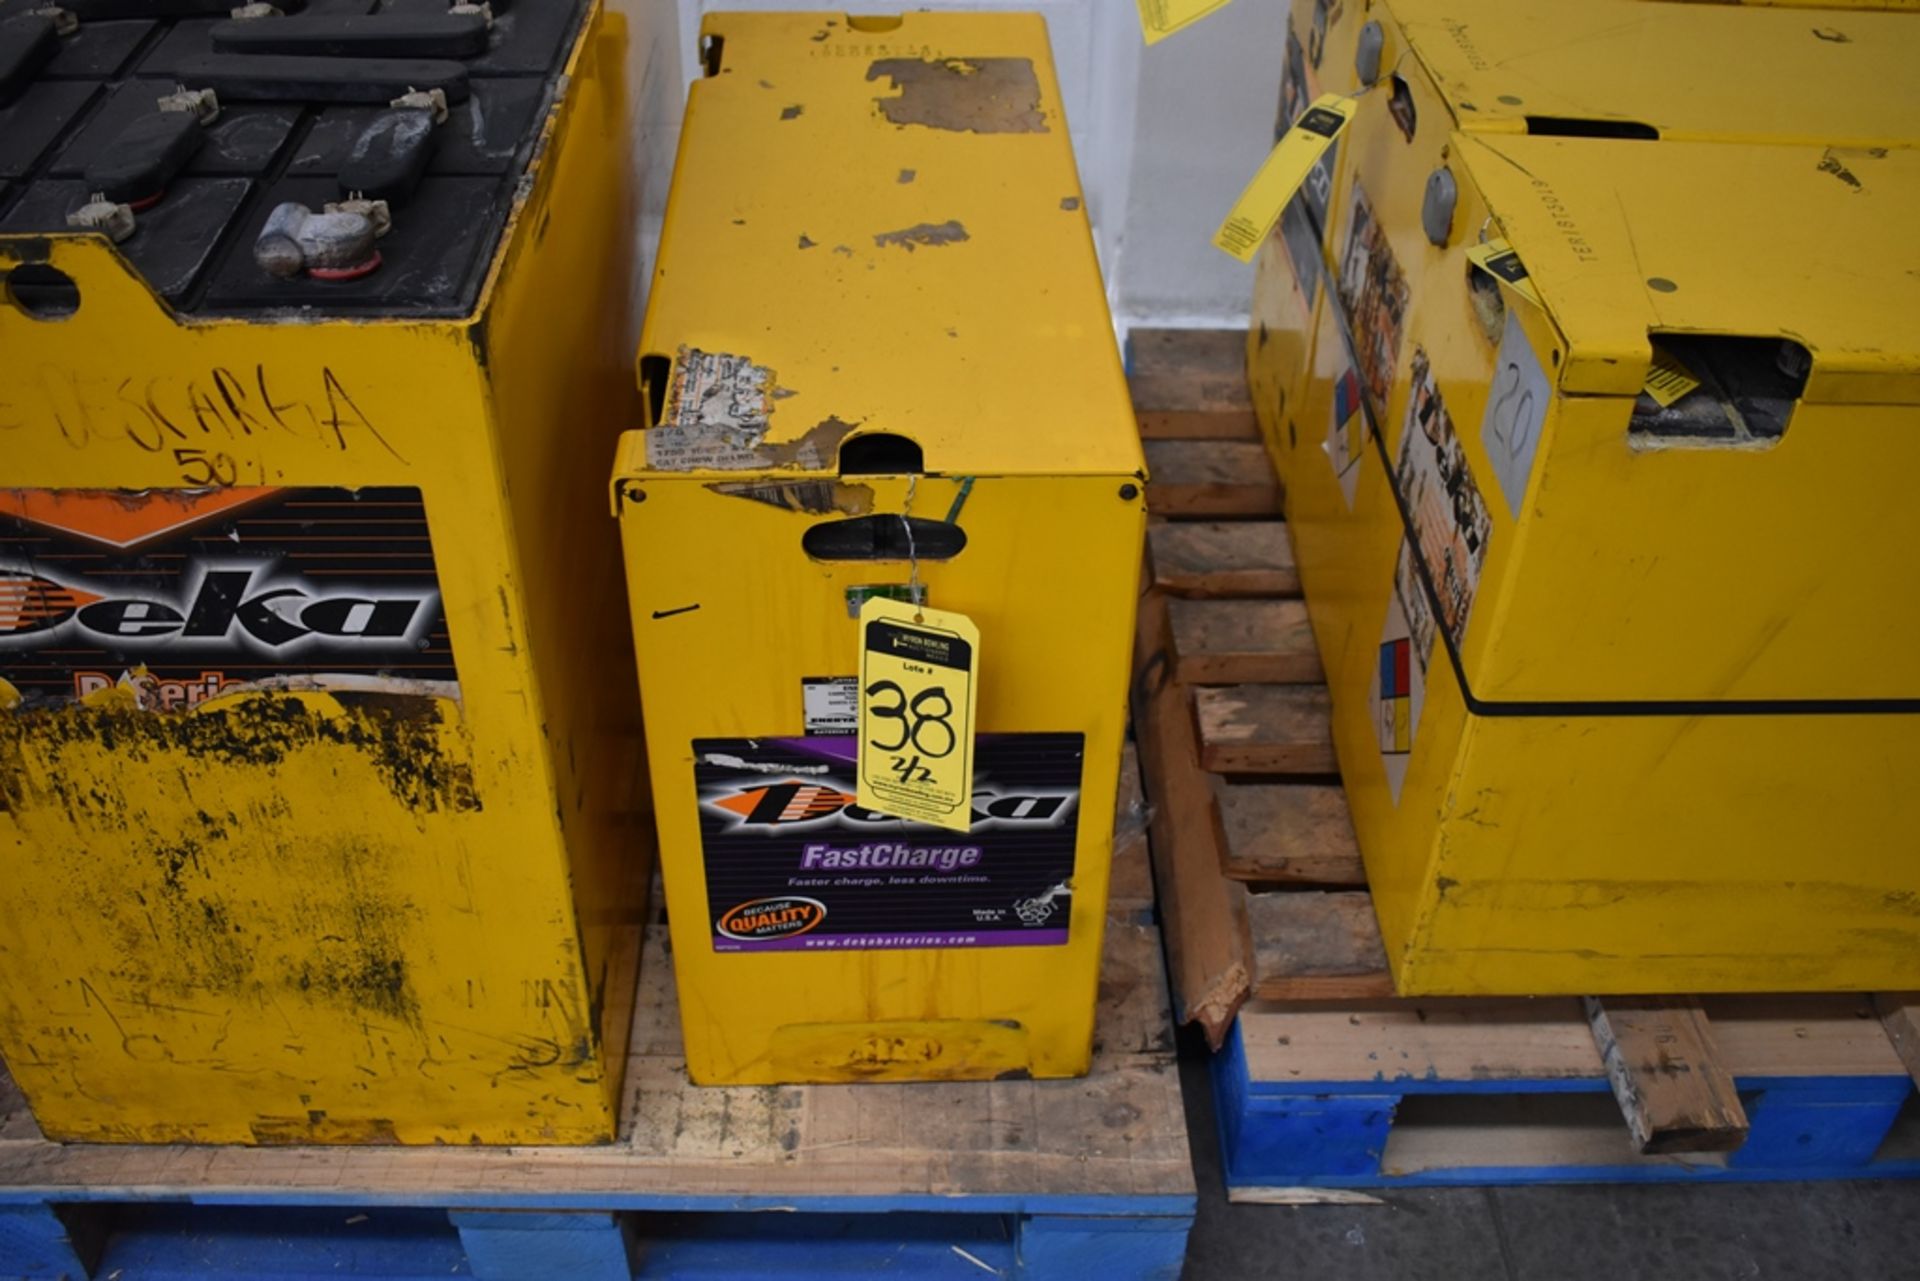 Ametek Prestolite Power Forklift Battery Charger, Model Mate-80 and Battery Brand Deka for 24 volts - Image 14 of 22